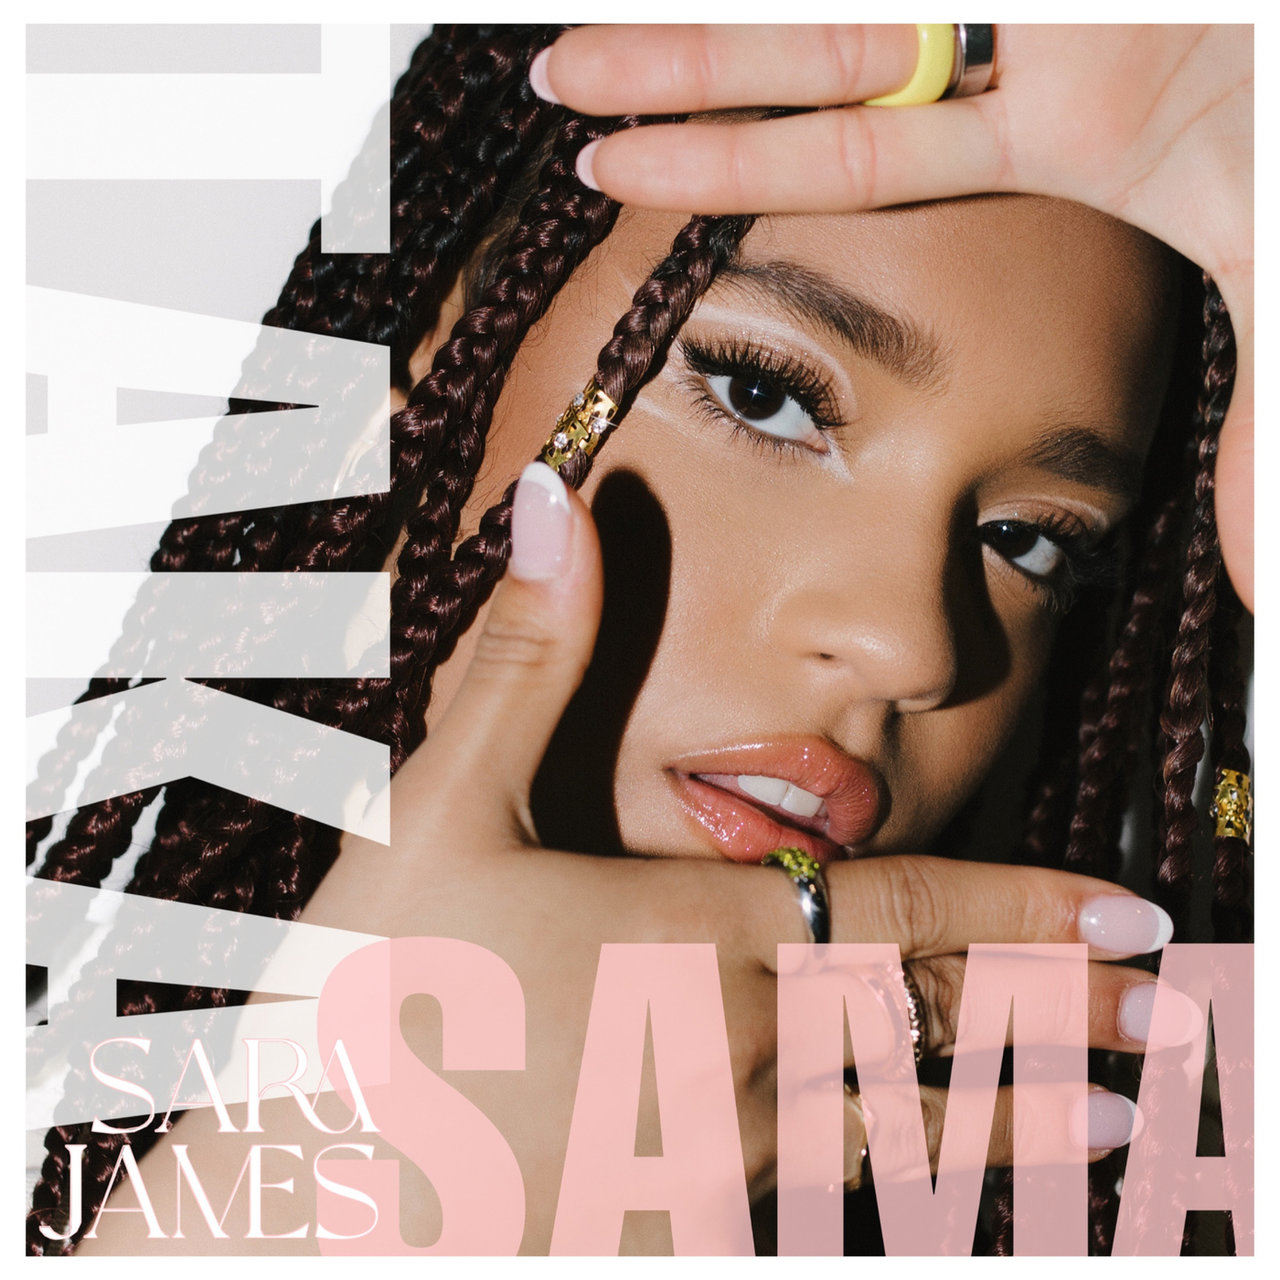 Sara James Taka Sama cover artwork